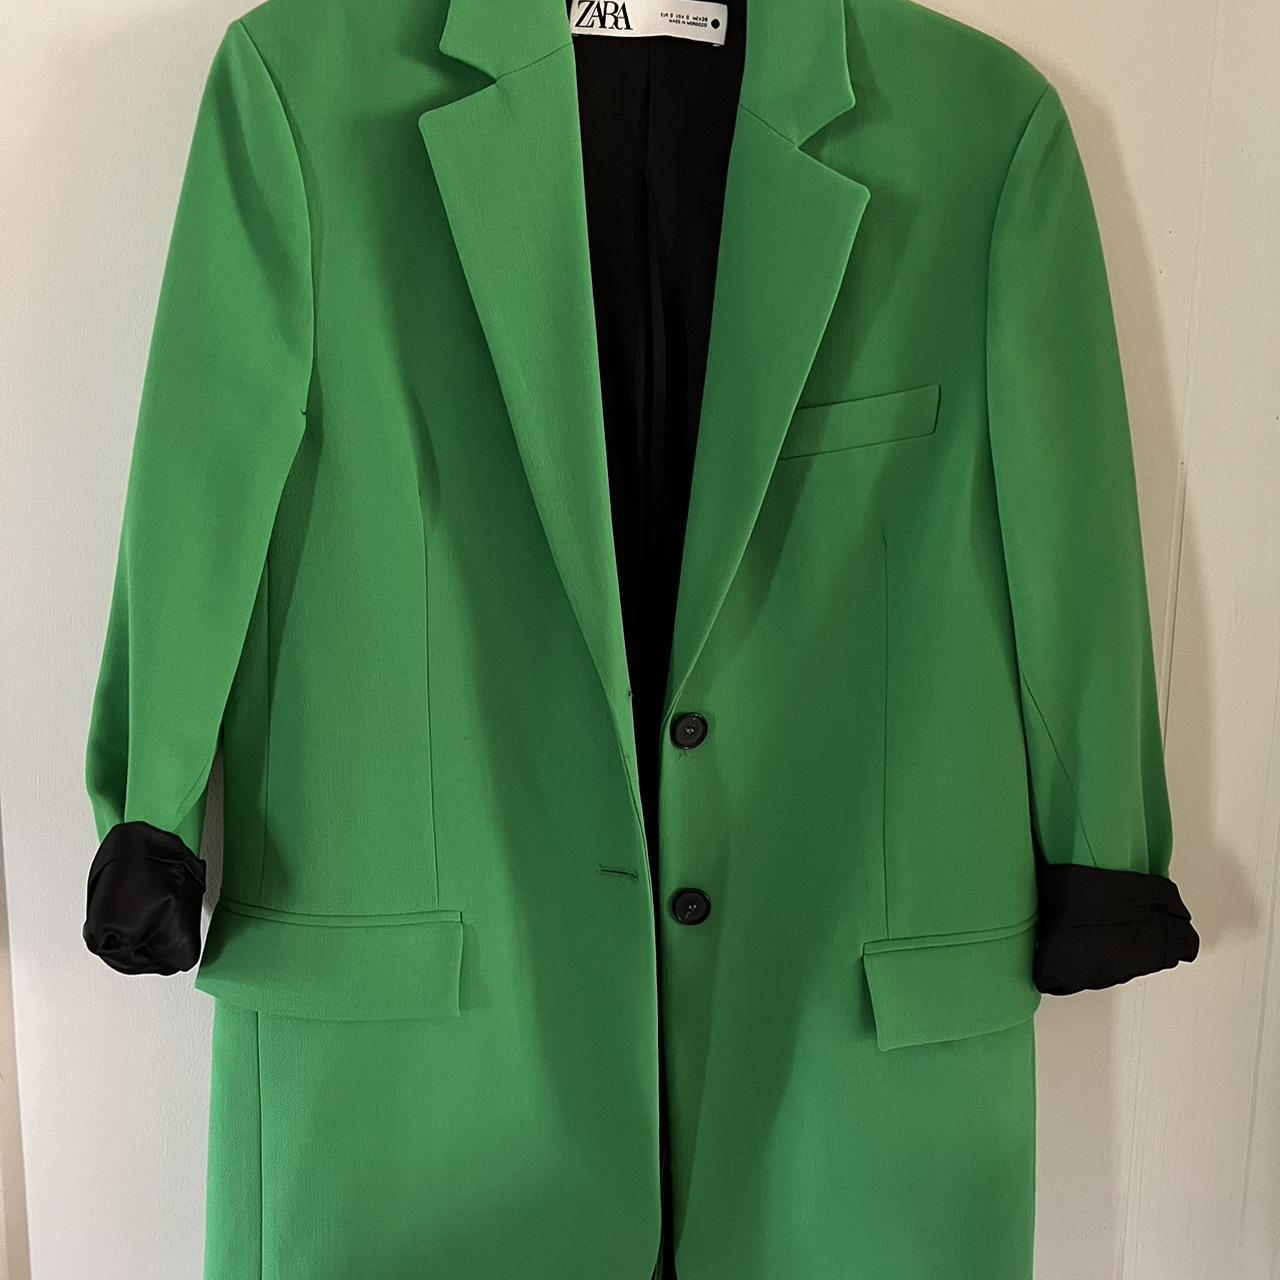 Zara Women's Green Jacket | Depop